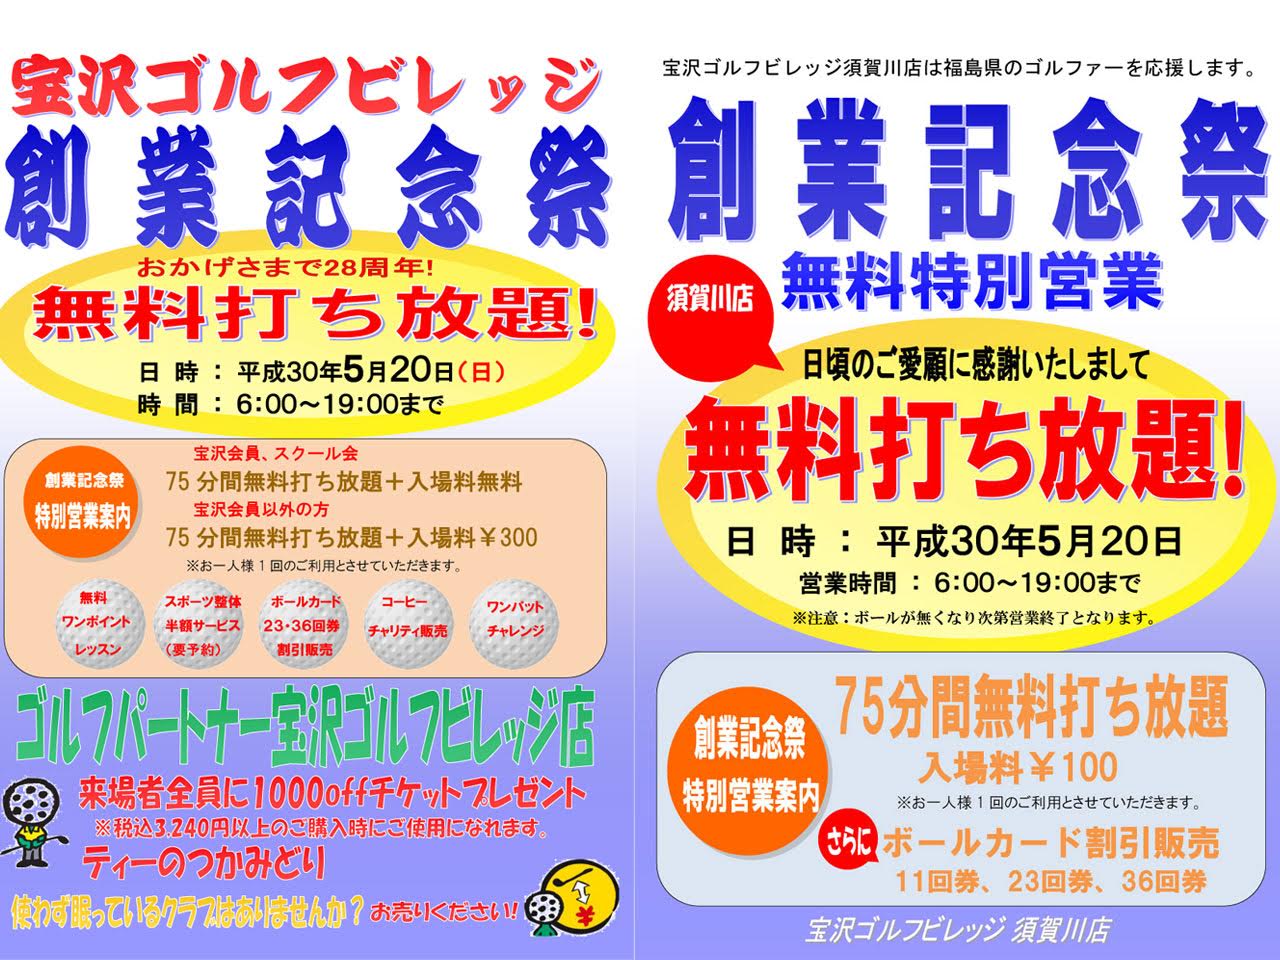 宝沢ゴルフビレッジ」にて創業祭を開催します！ | 丸光産業株式会社